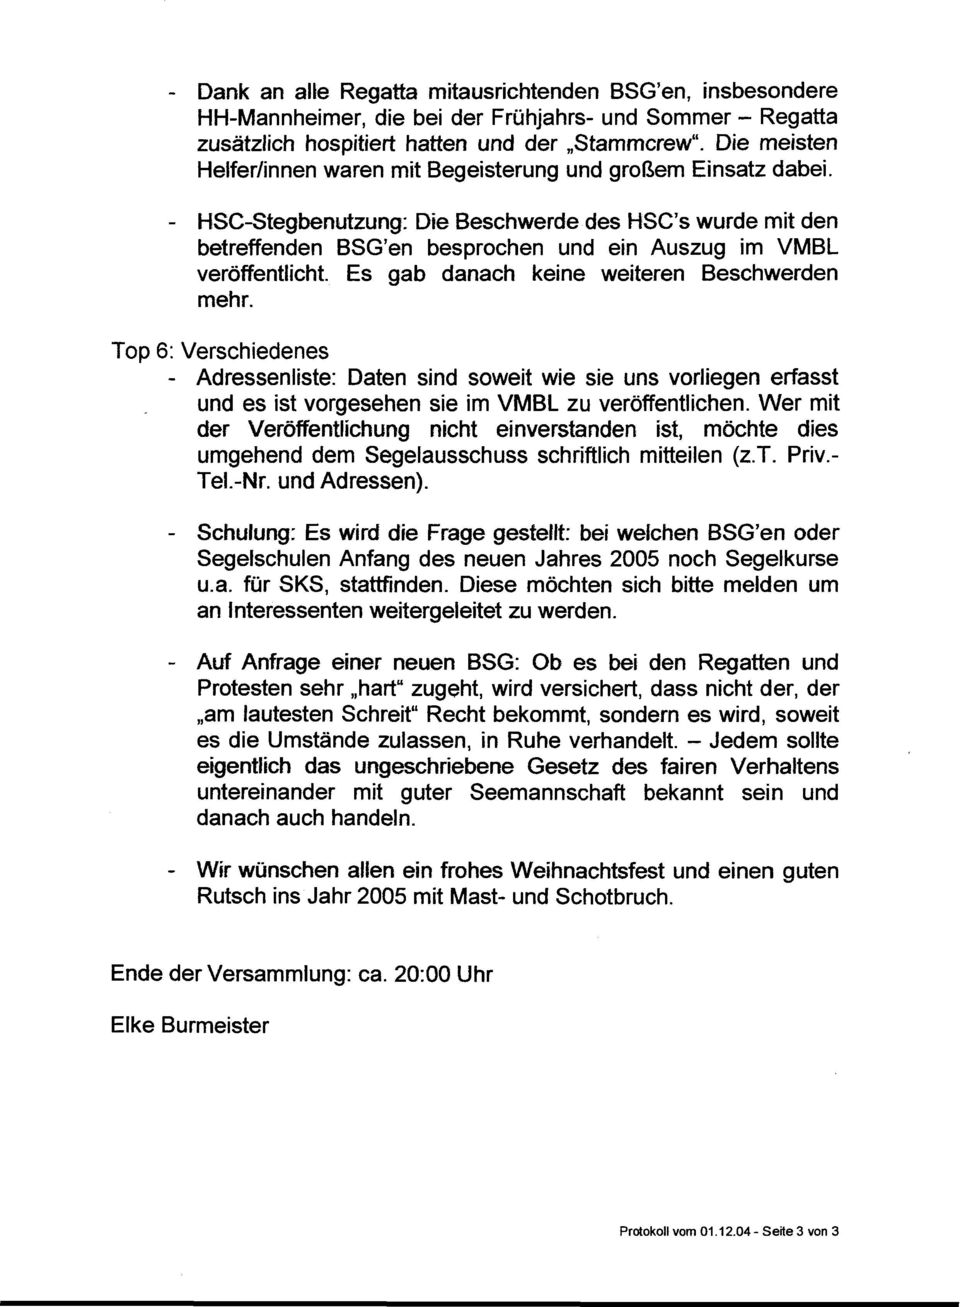 - HSC-Stegbenutzung: Die Beschwerde des HSC's wurde mit den betreffenden BSG'en besprochen und ein Auszug im VMBL veröffentlicht. Es gab danach keine weiteren Beschwerden mehr.